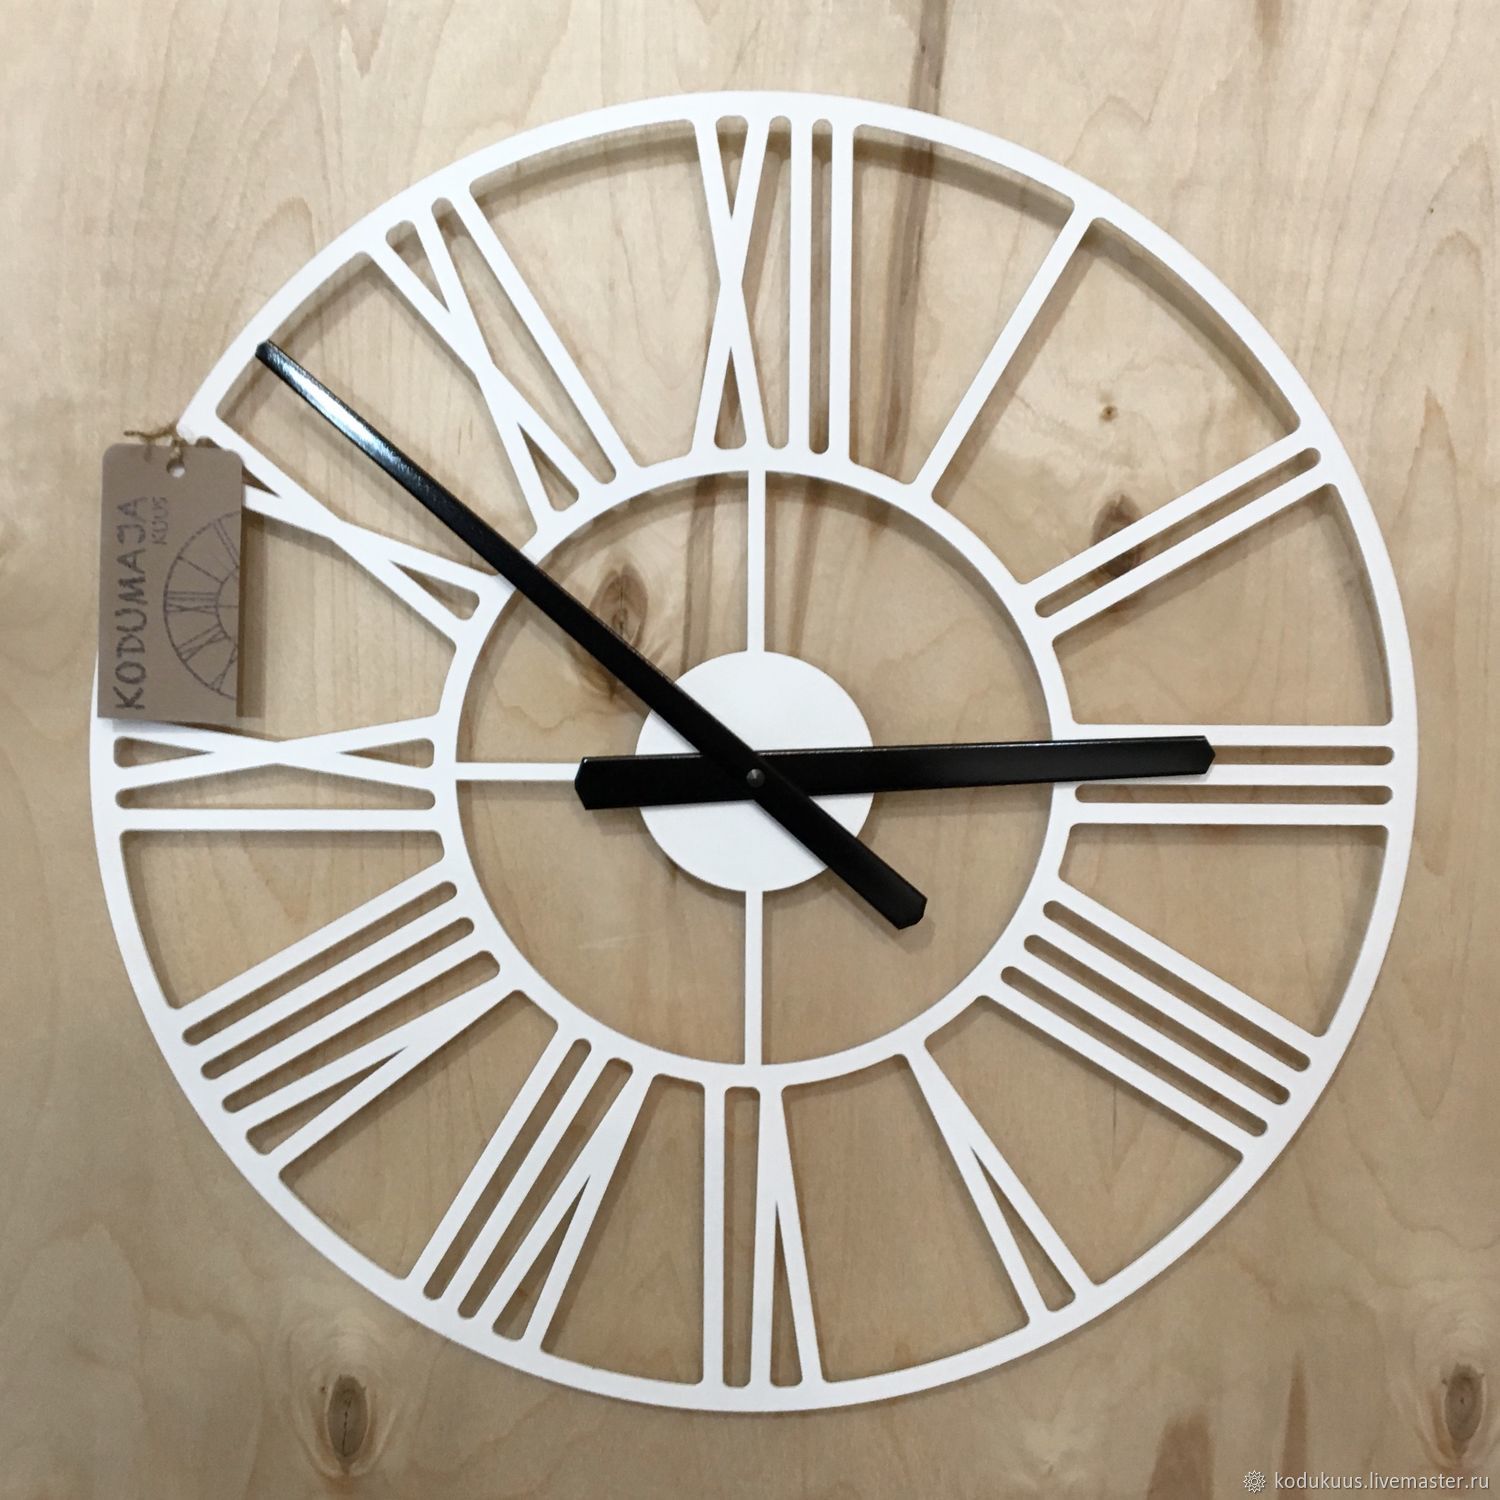 Часы настенные 50 см. Часы настенные Black Metal Clock (40x40 см) 1285860. Часы настенные Олд Норд 45 см. Часы настенные классические. Часы настенные 45см.